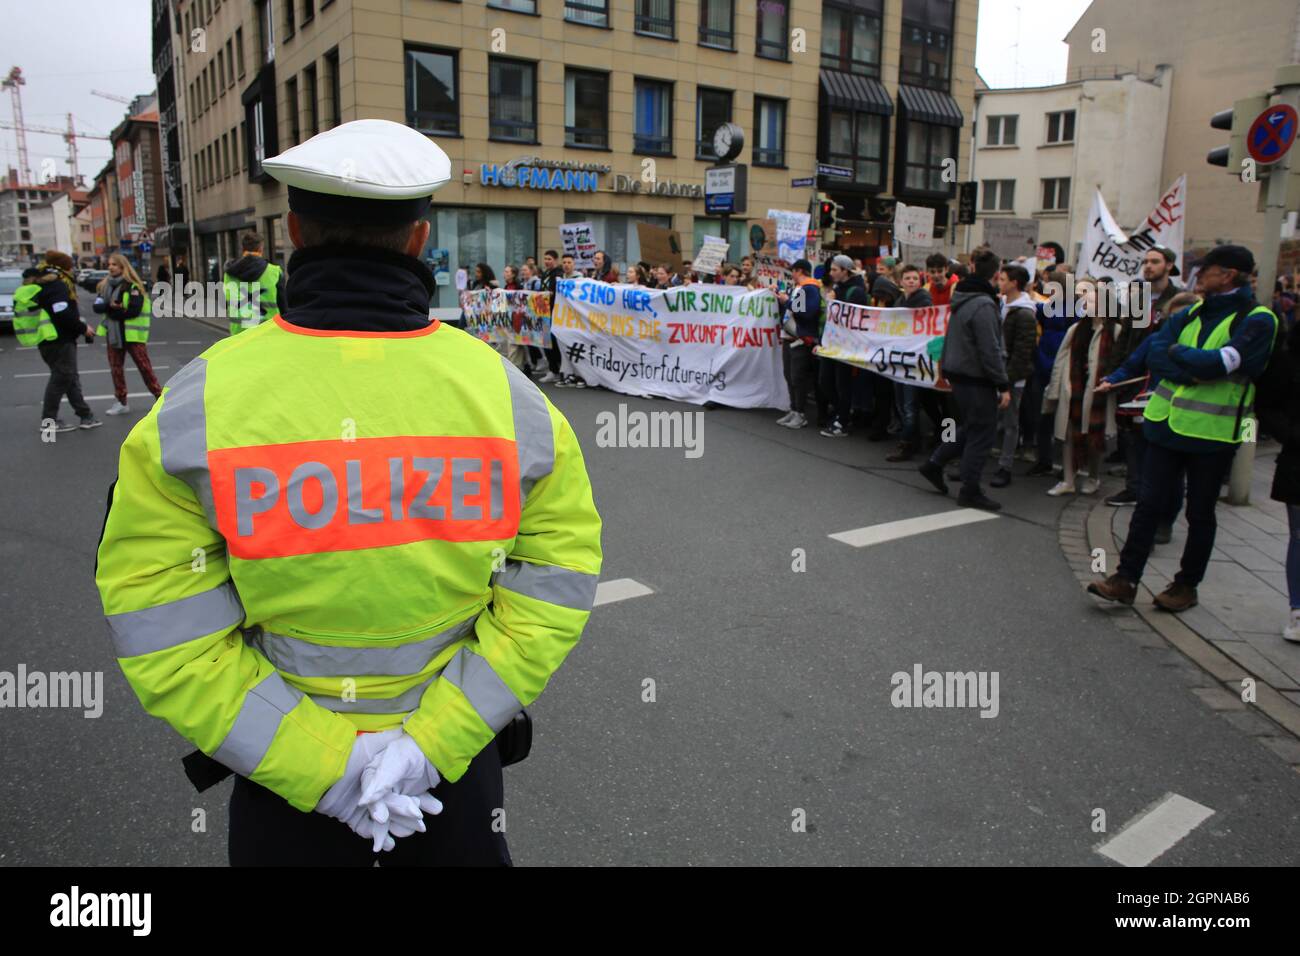 Ein Polizist steht Wache, während junge Demonstranten an einer Demonstration in Nürnberg im Rahmen der Studentenfreitags-Kampagne teilnehmen, die auf mich abzielt Stockfoto